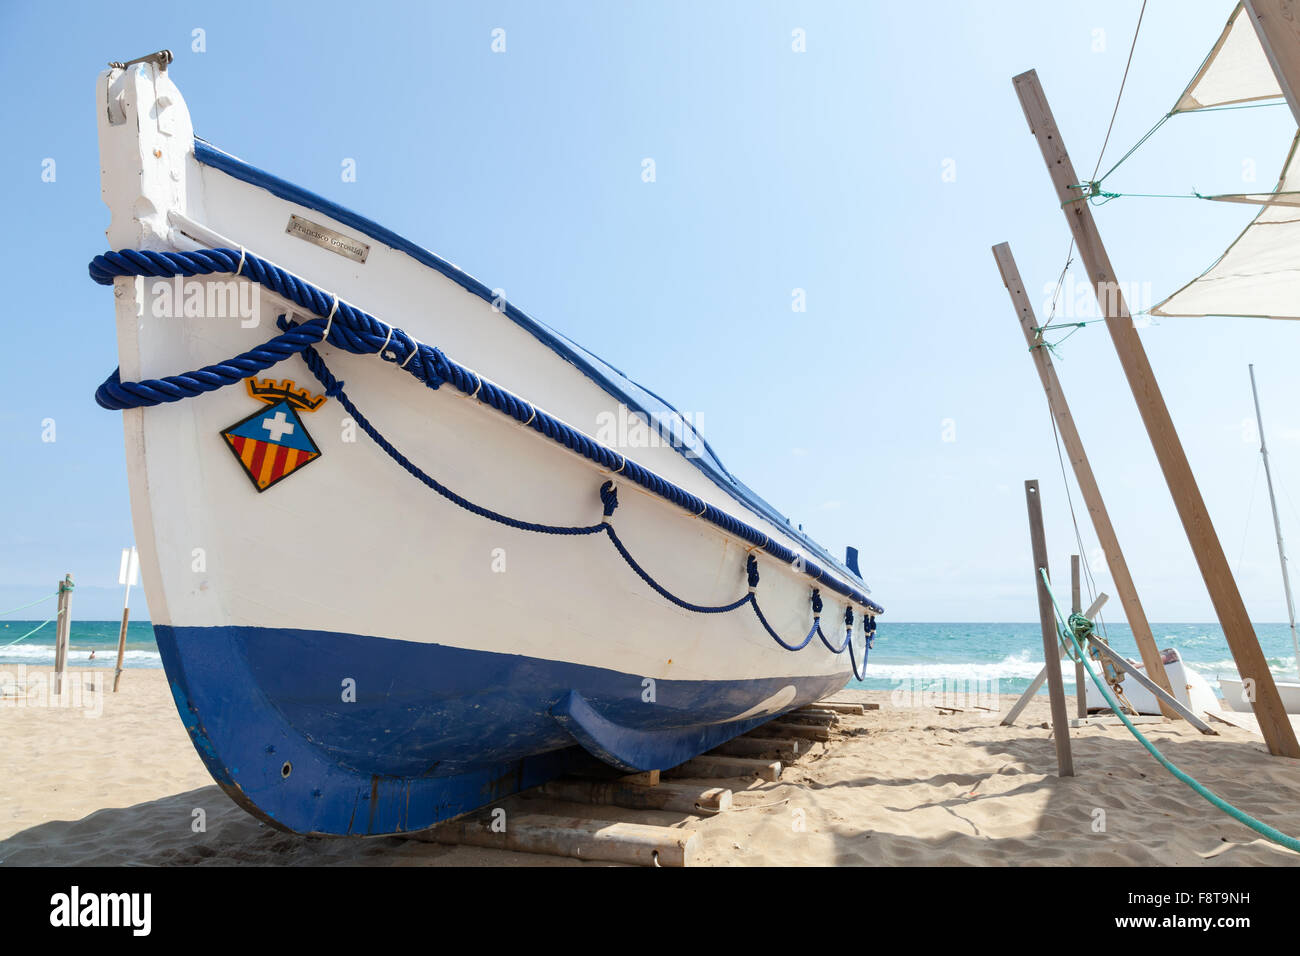 Calafell, Espagne - 20 août 2014 : bateau de pêche en bois blanc s'étend sur une plage de sable, mer Méditerranée, côte de l'Espagne Banque D'Images